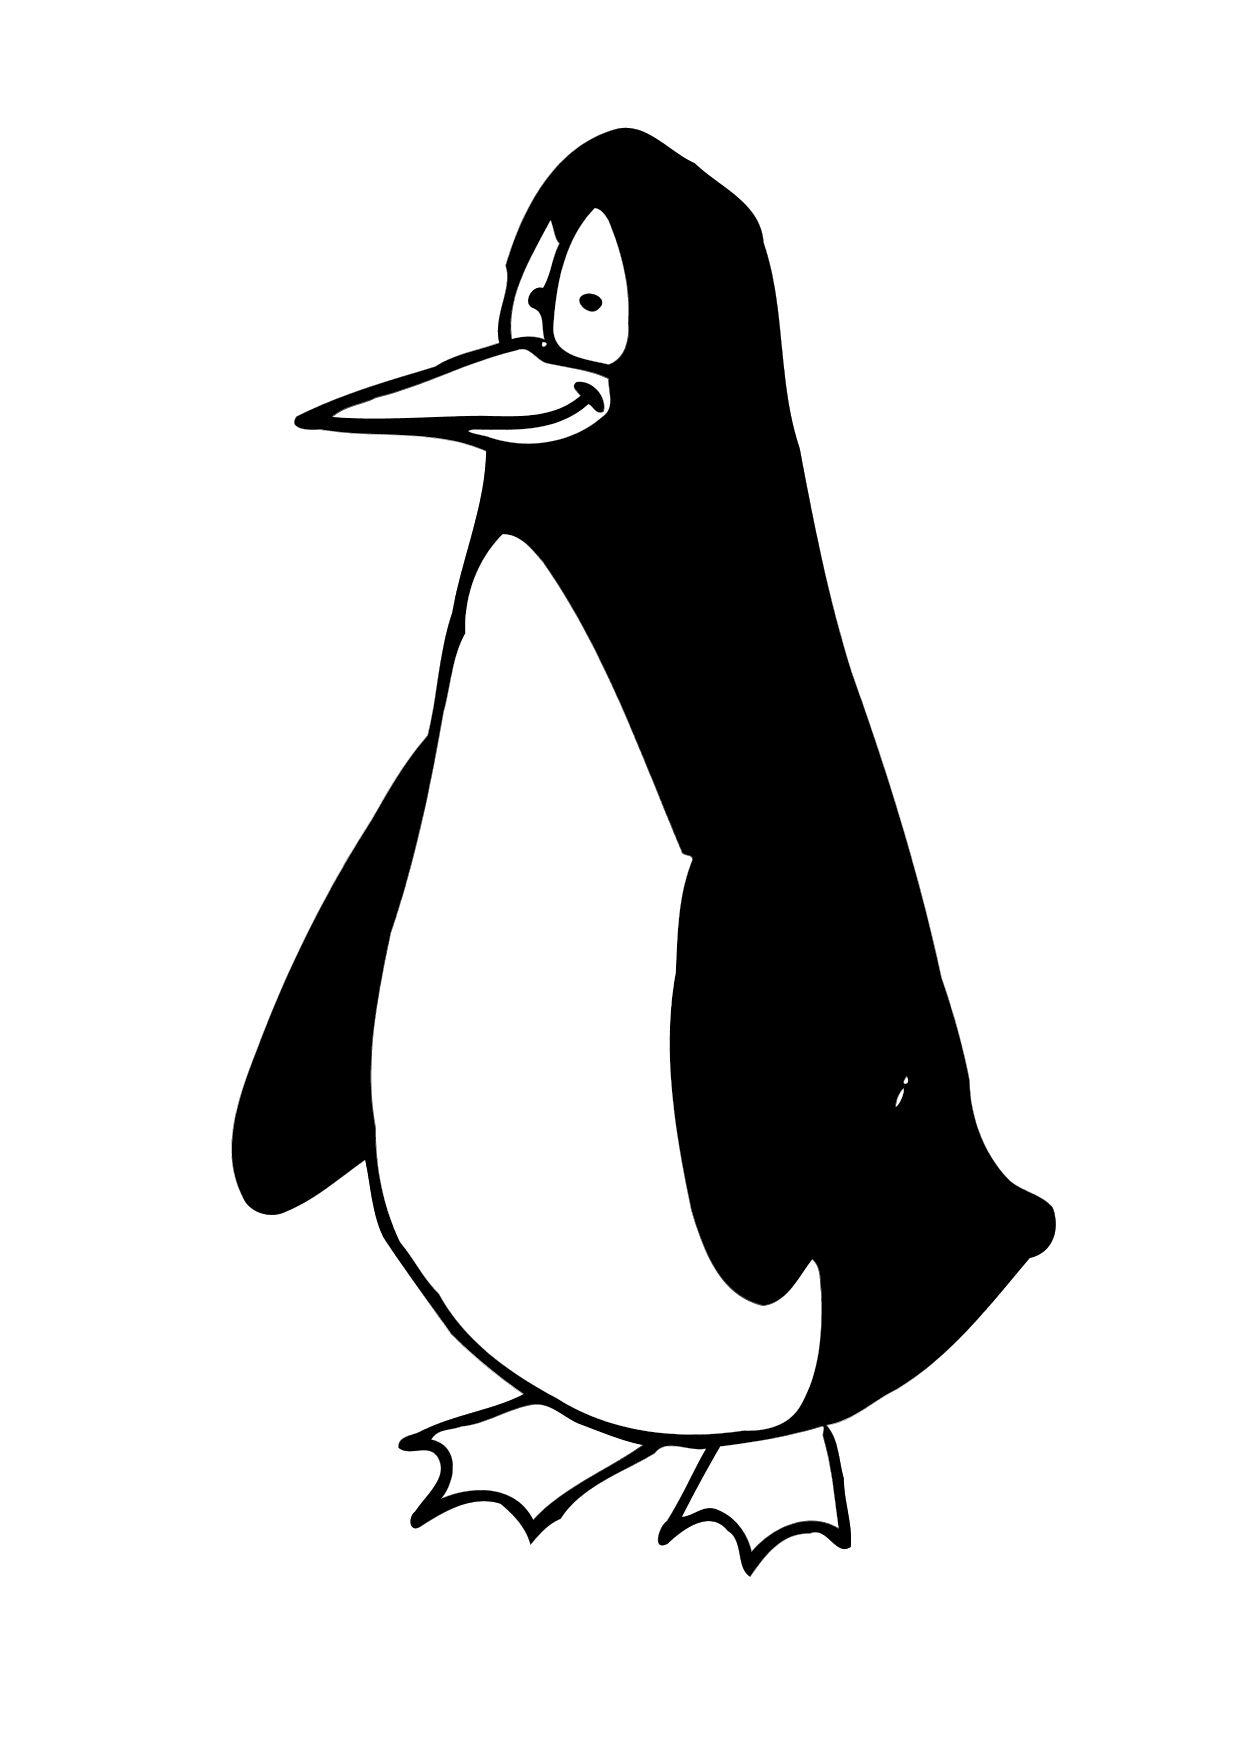 Malvorlage Pinguin - Kostenlose Ausmalbilder Zum Ausdrucken. über Bilder Von Pinguinen Zum Ausdrucken